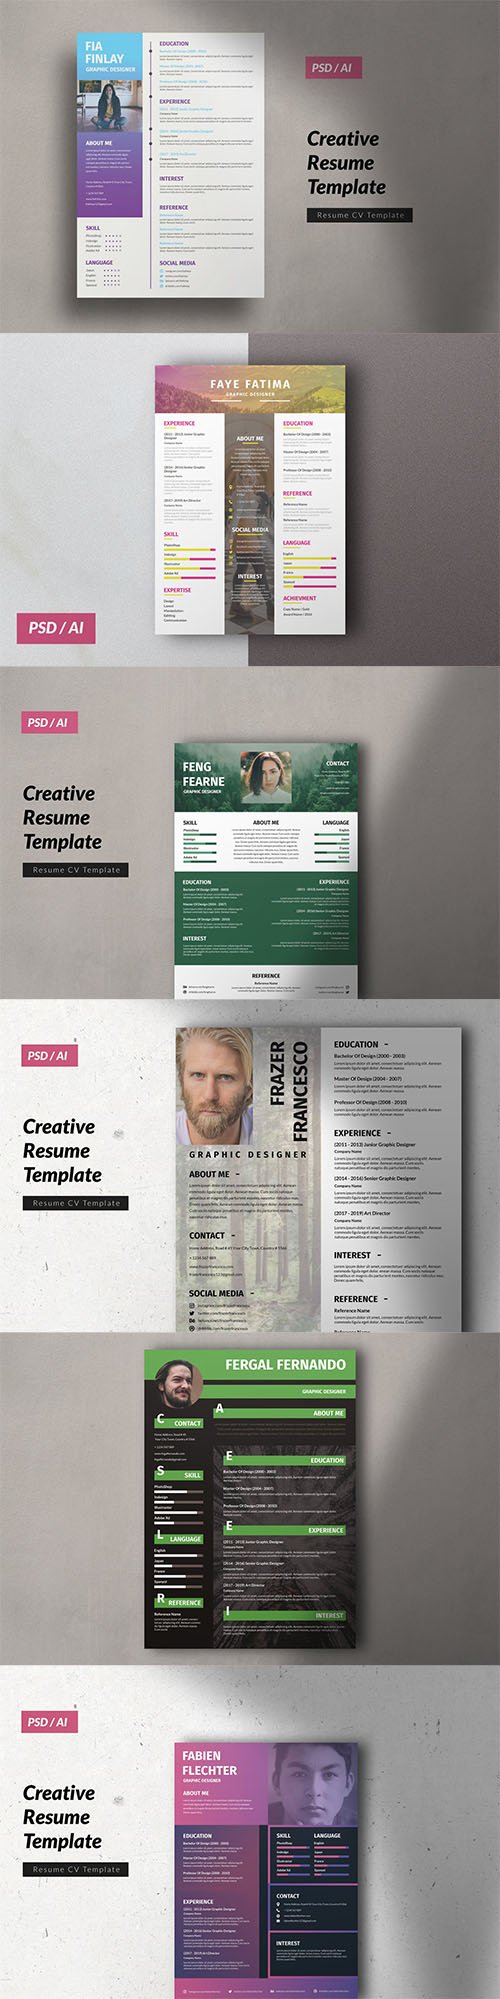 Resume Graphic Design Vol. 1-6